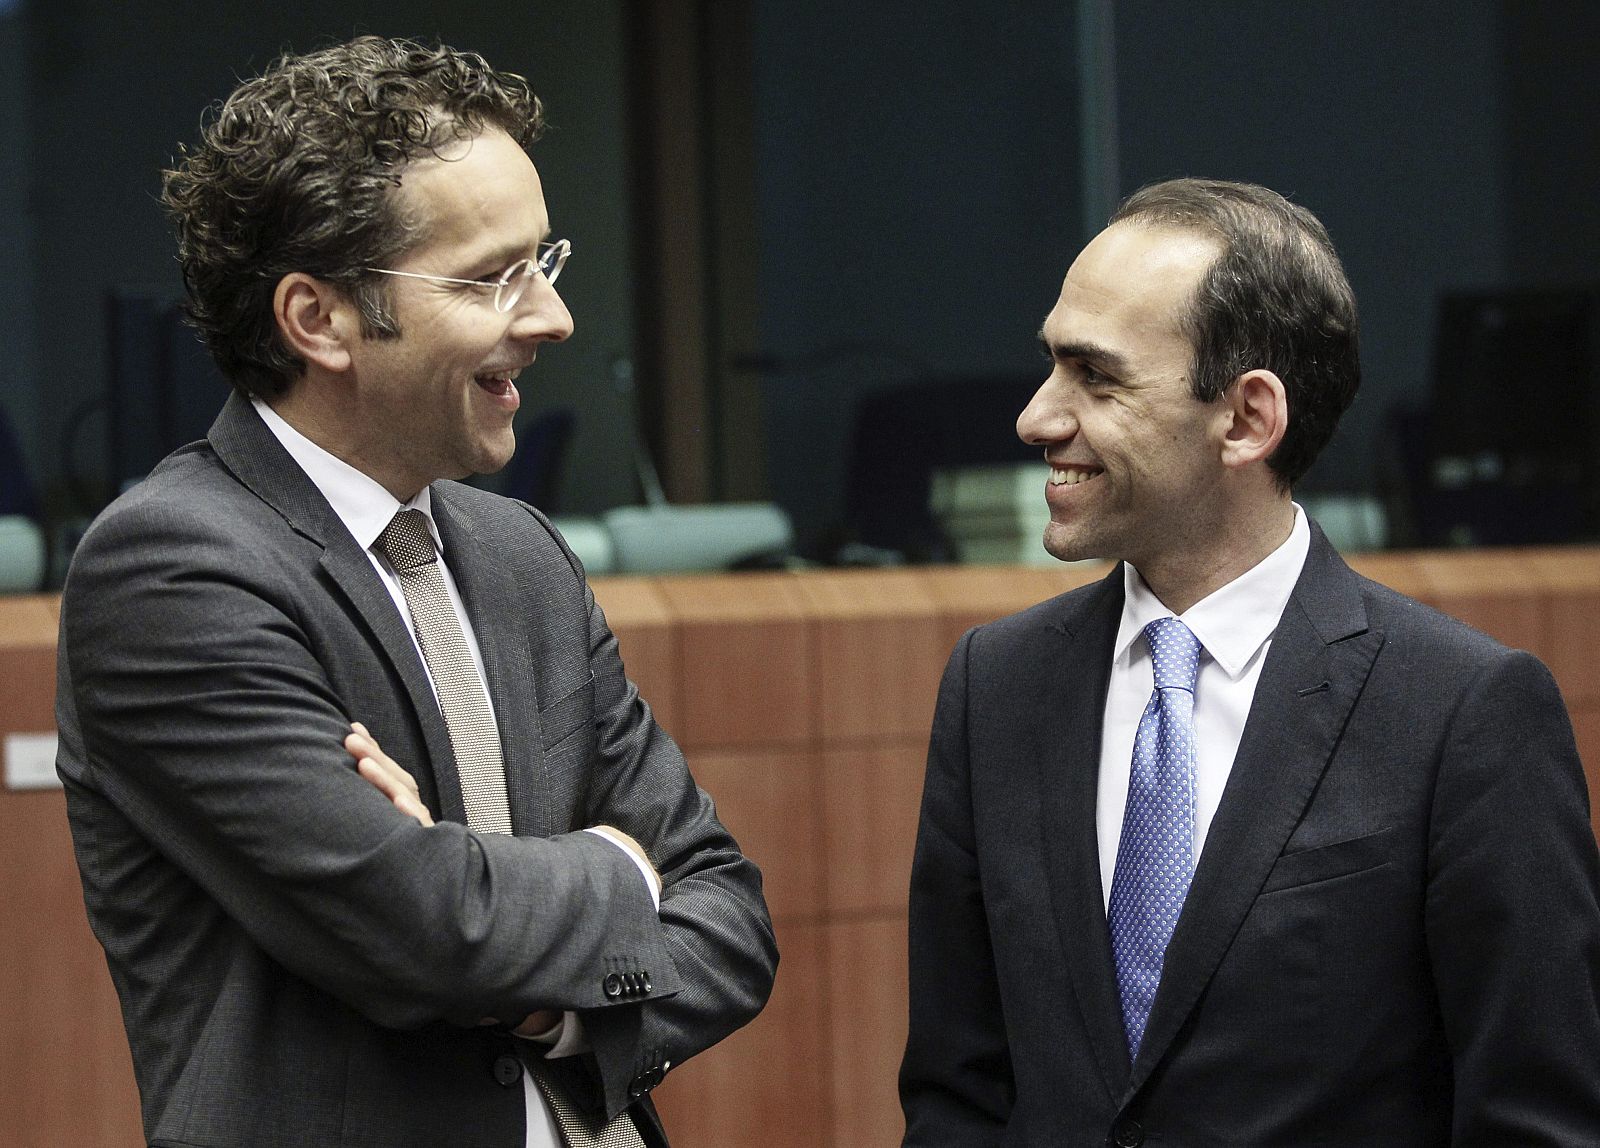 El presidente del Eurogrupo y ministro holandés de Finanzas, Jeroen Dijsselbloem, conversa con el ministro chipriota de Finanzas, Haris Georgiades